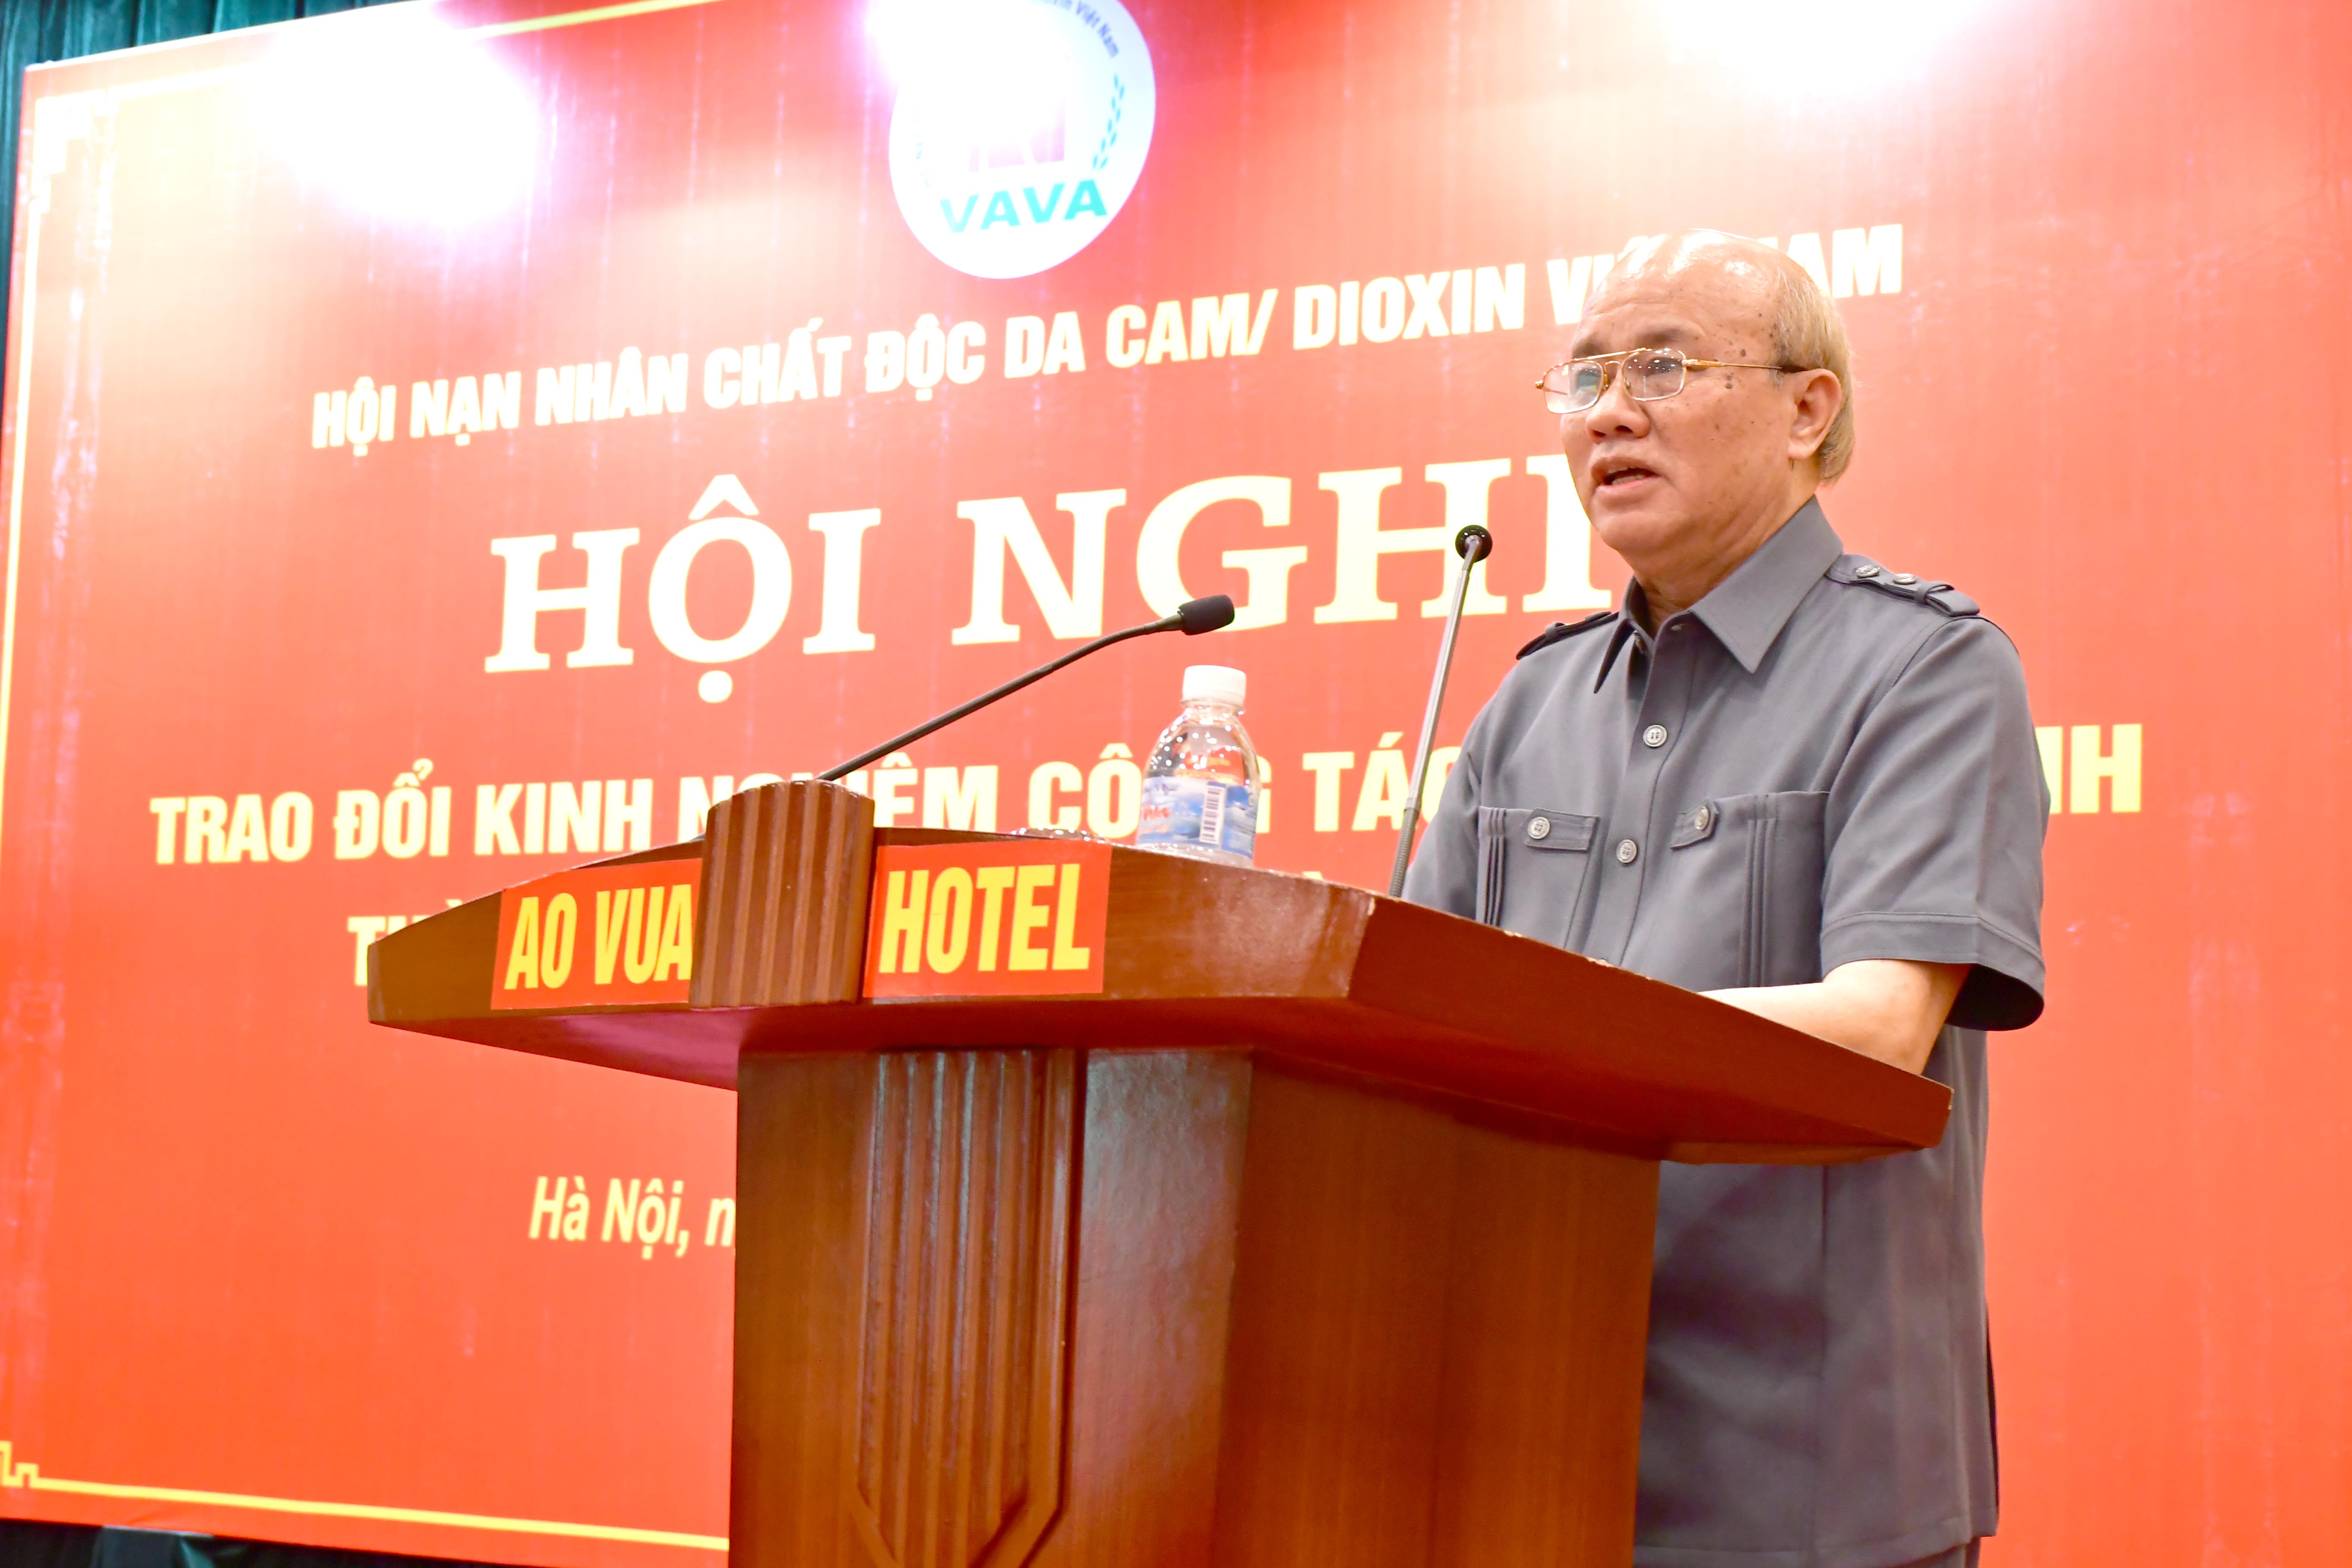 Ông Tạ Quang Biên, Chủ tịch Tỉnh hội Hòa Bình